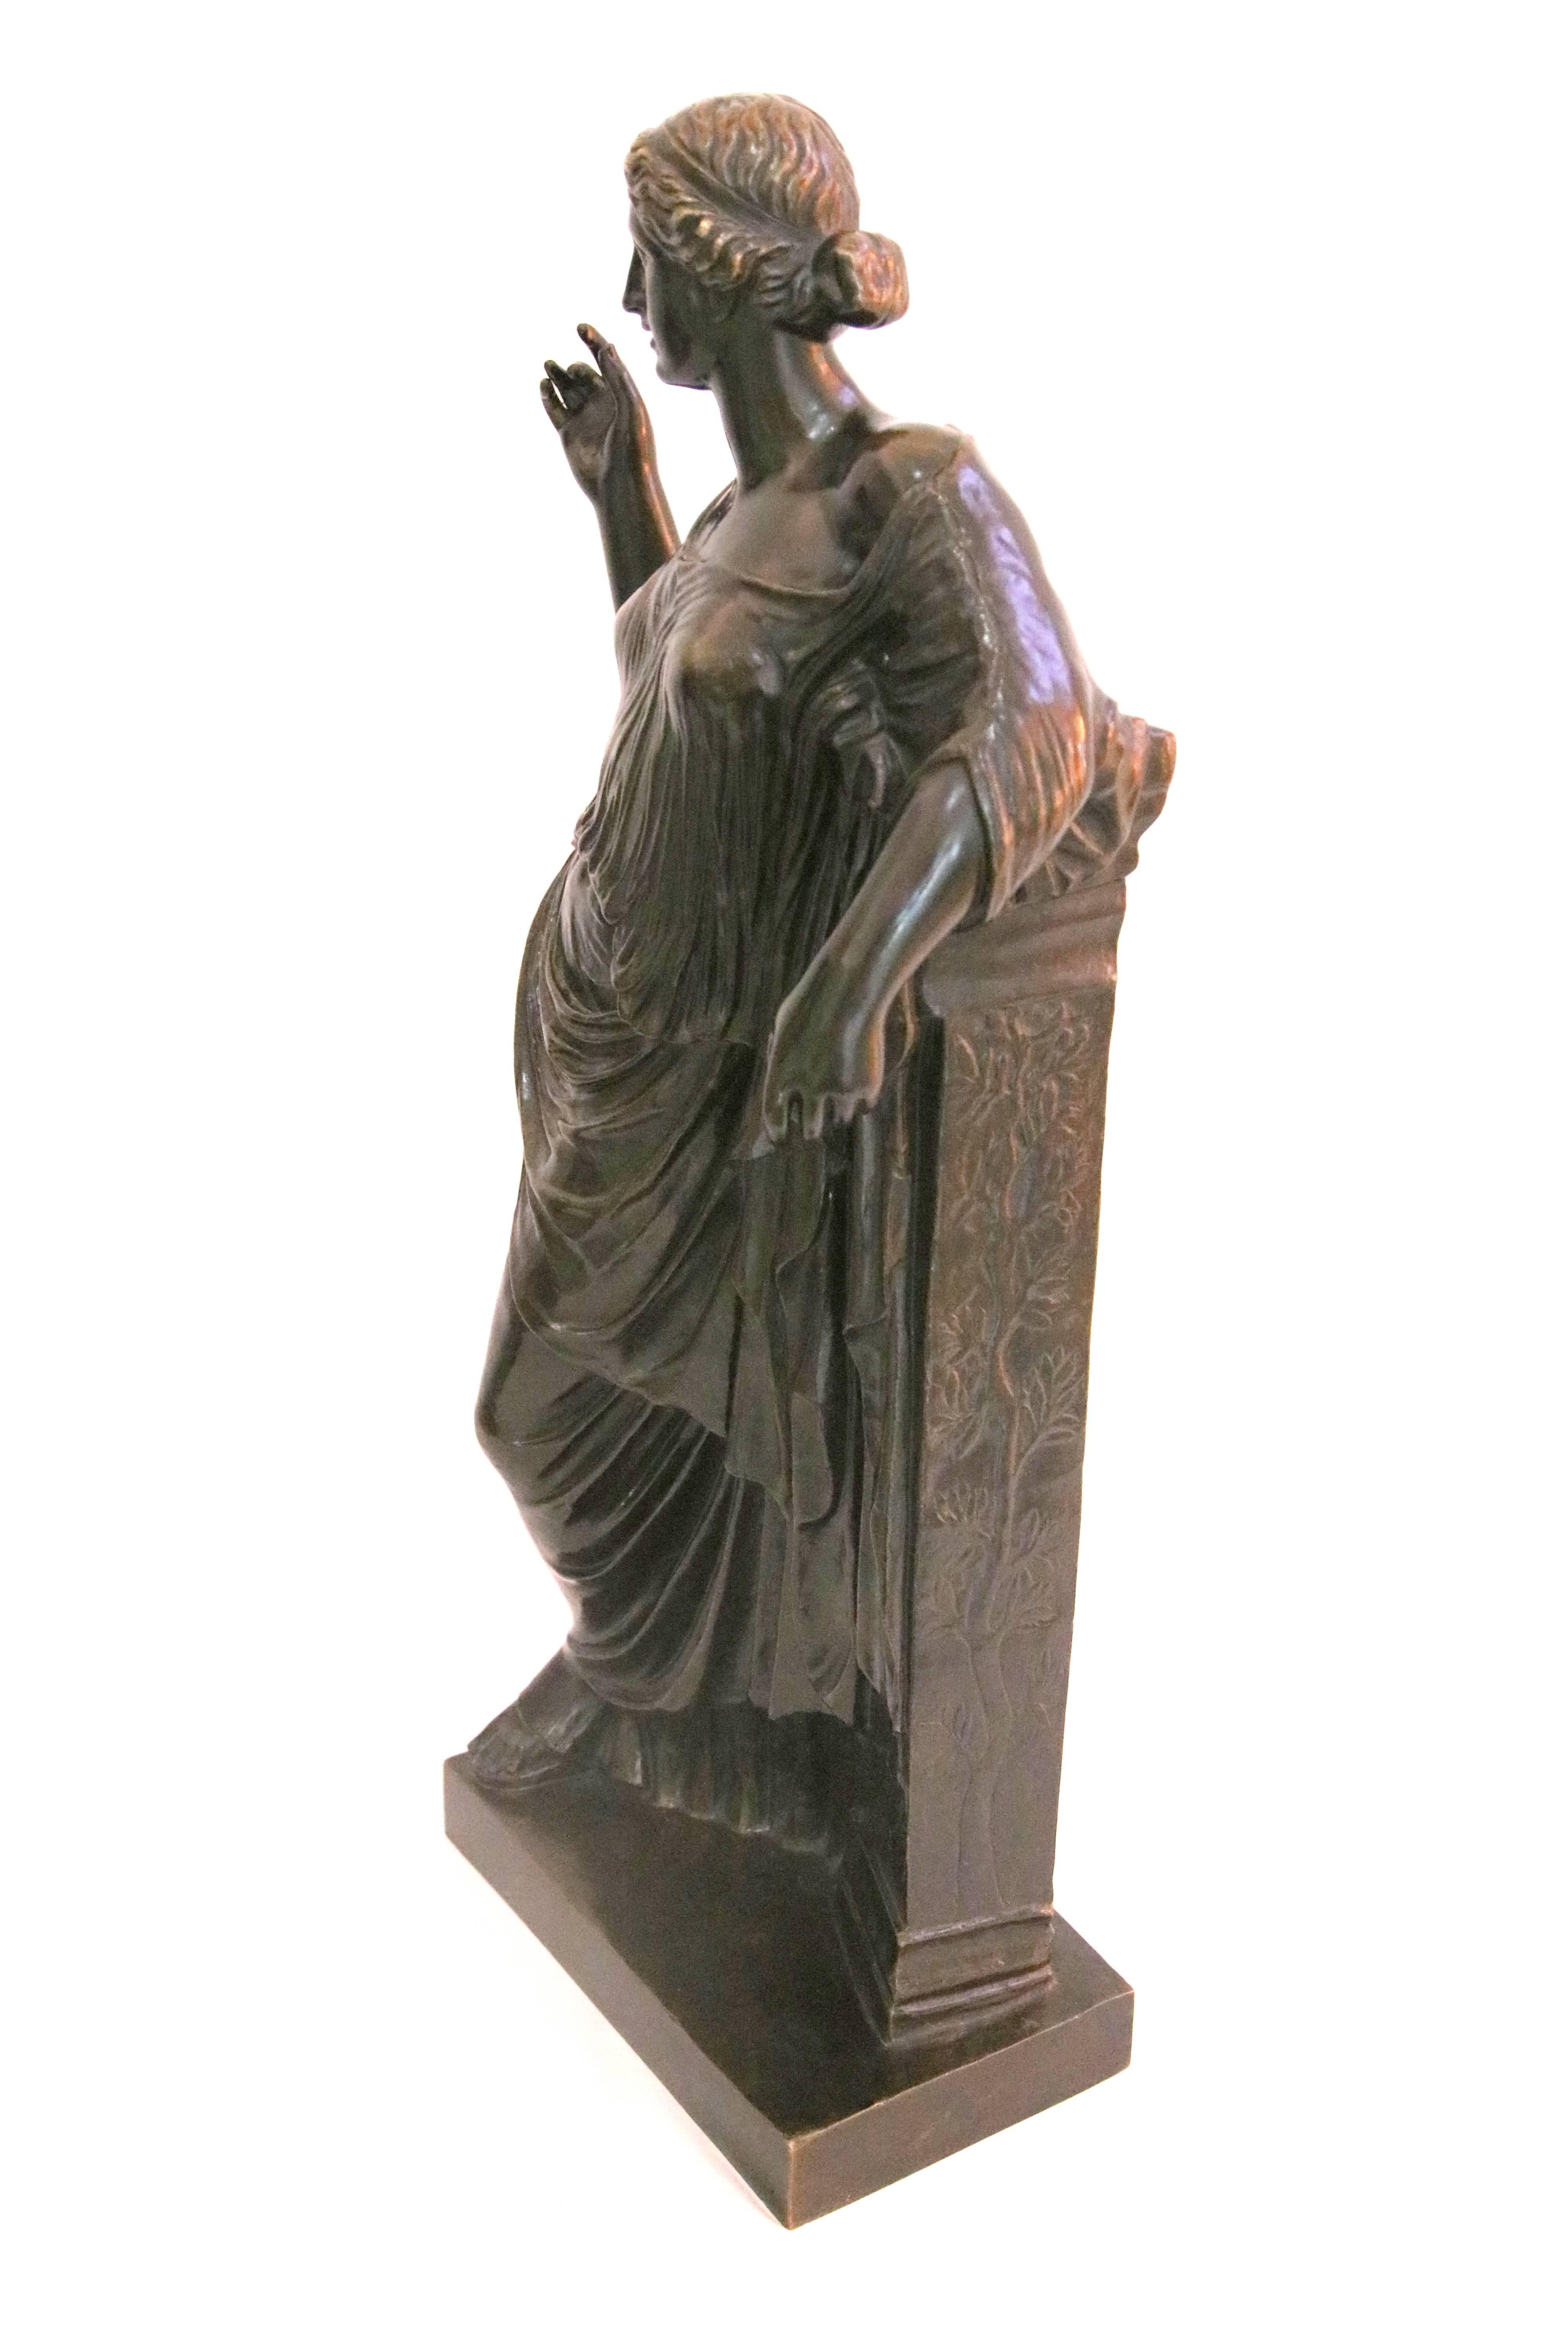 Ce bronze a été produit par la firme Susse Frères en France à la fin du 19e siècle lors du 